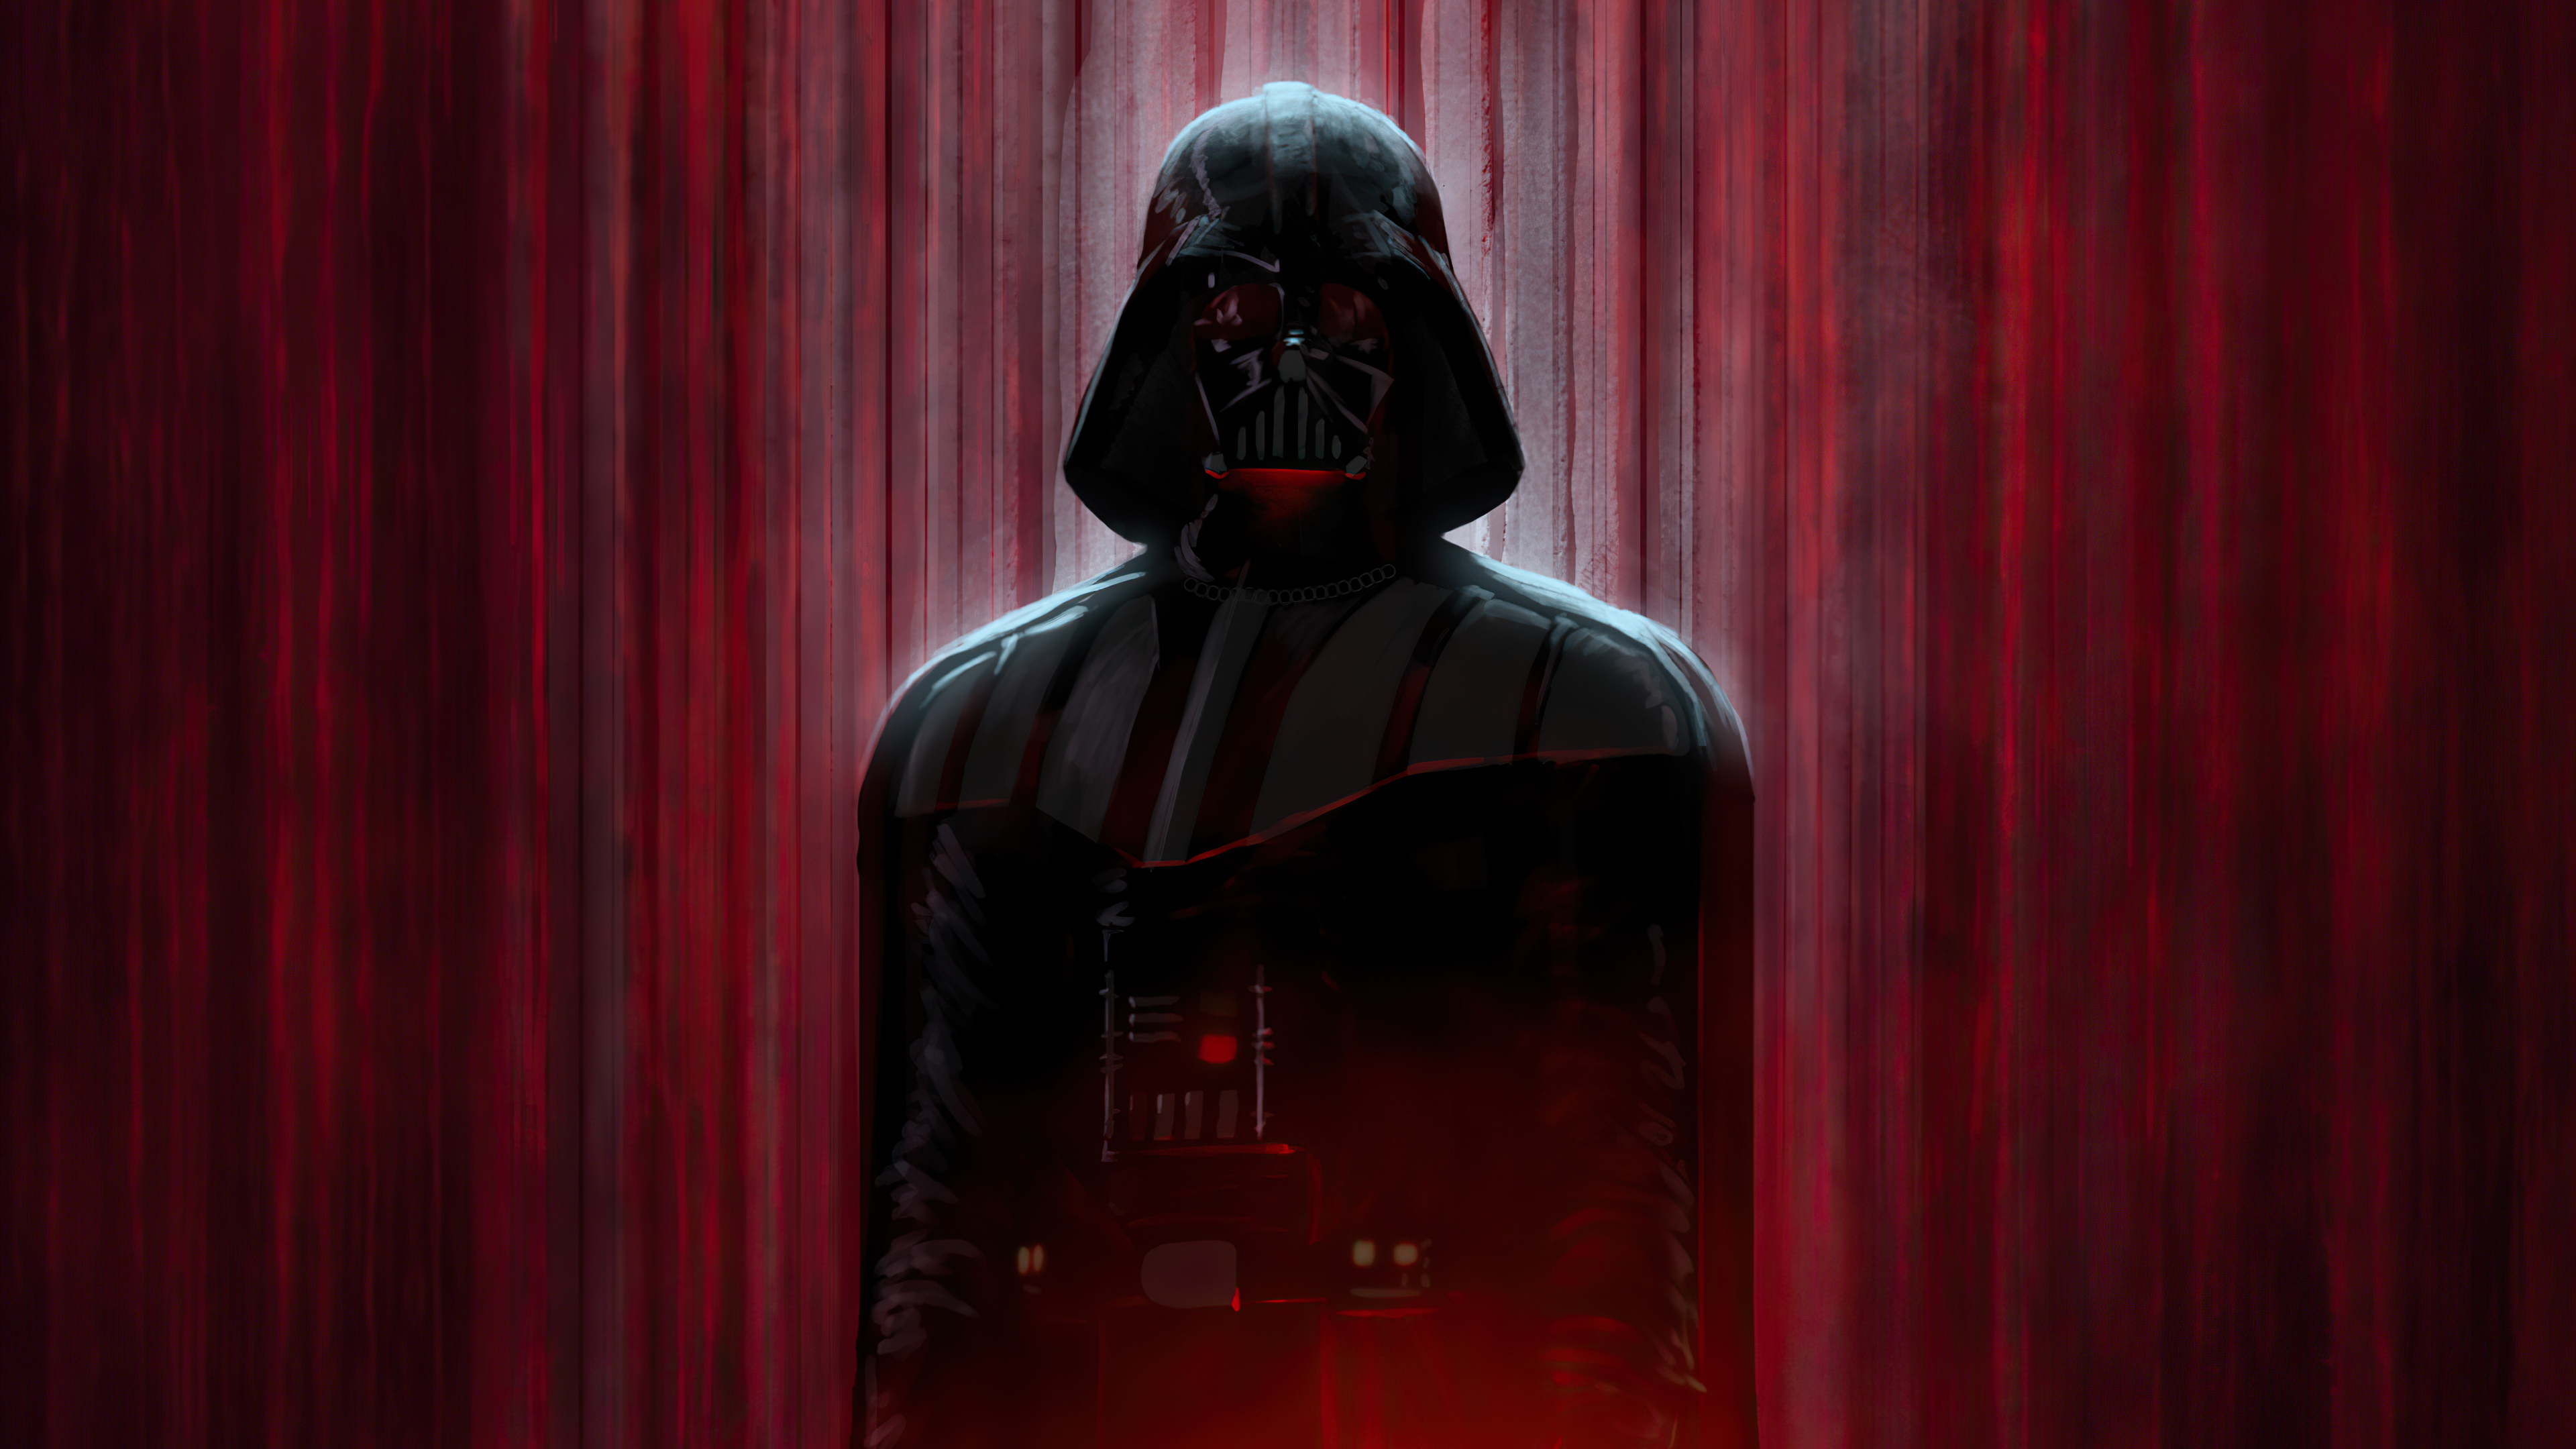 Sci Fi Star Wars 4k Ultra HD Wallpaper by Daniel Monsalve